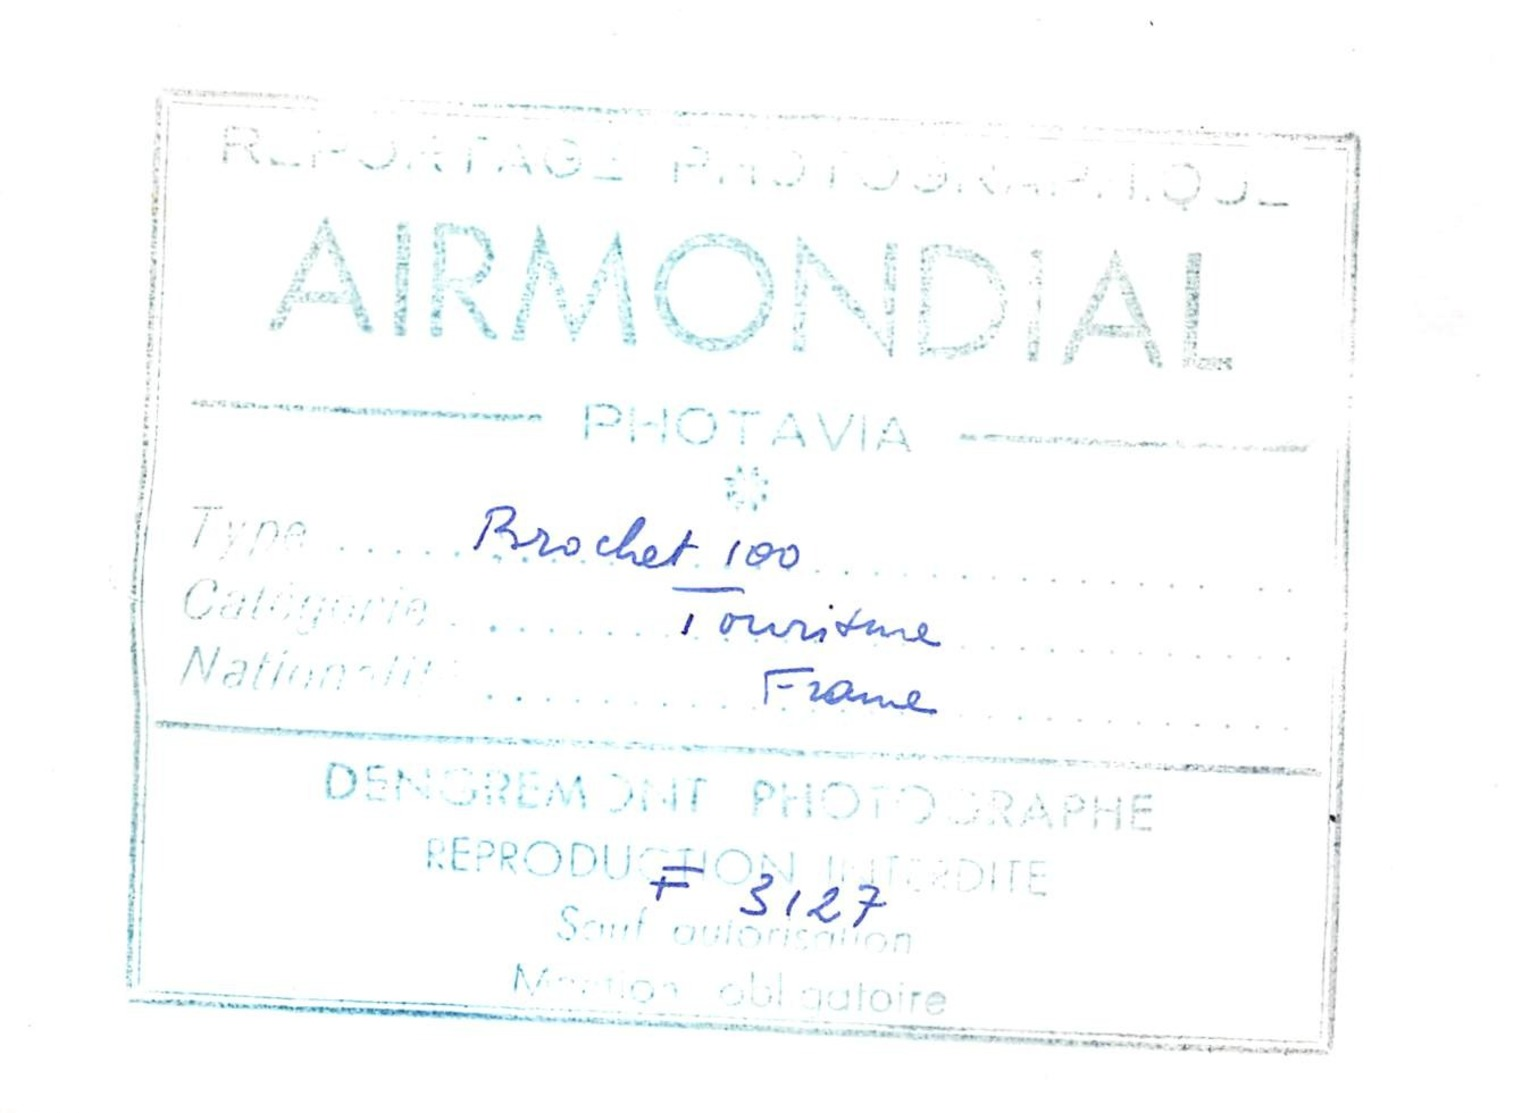 AIR MONDIAL //  COLLECTION PHOTAVIA // BROCHET MB 100 - AVION TRIPLACE DE TOURISME - PREMIER VOL 3 JANVIER 1951 - Aviation